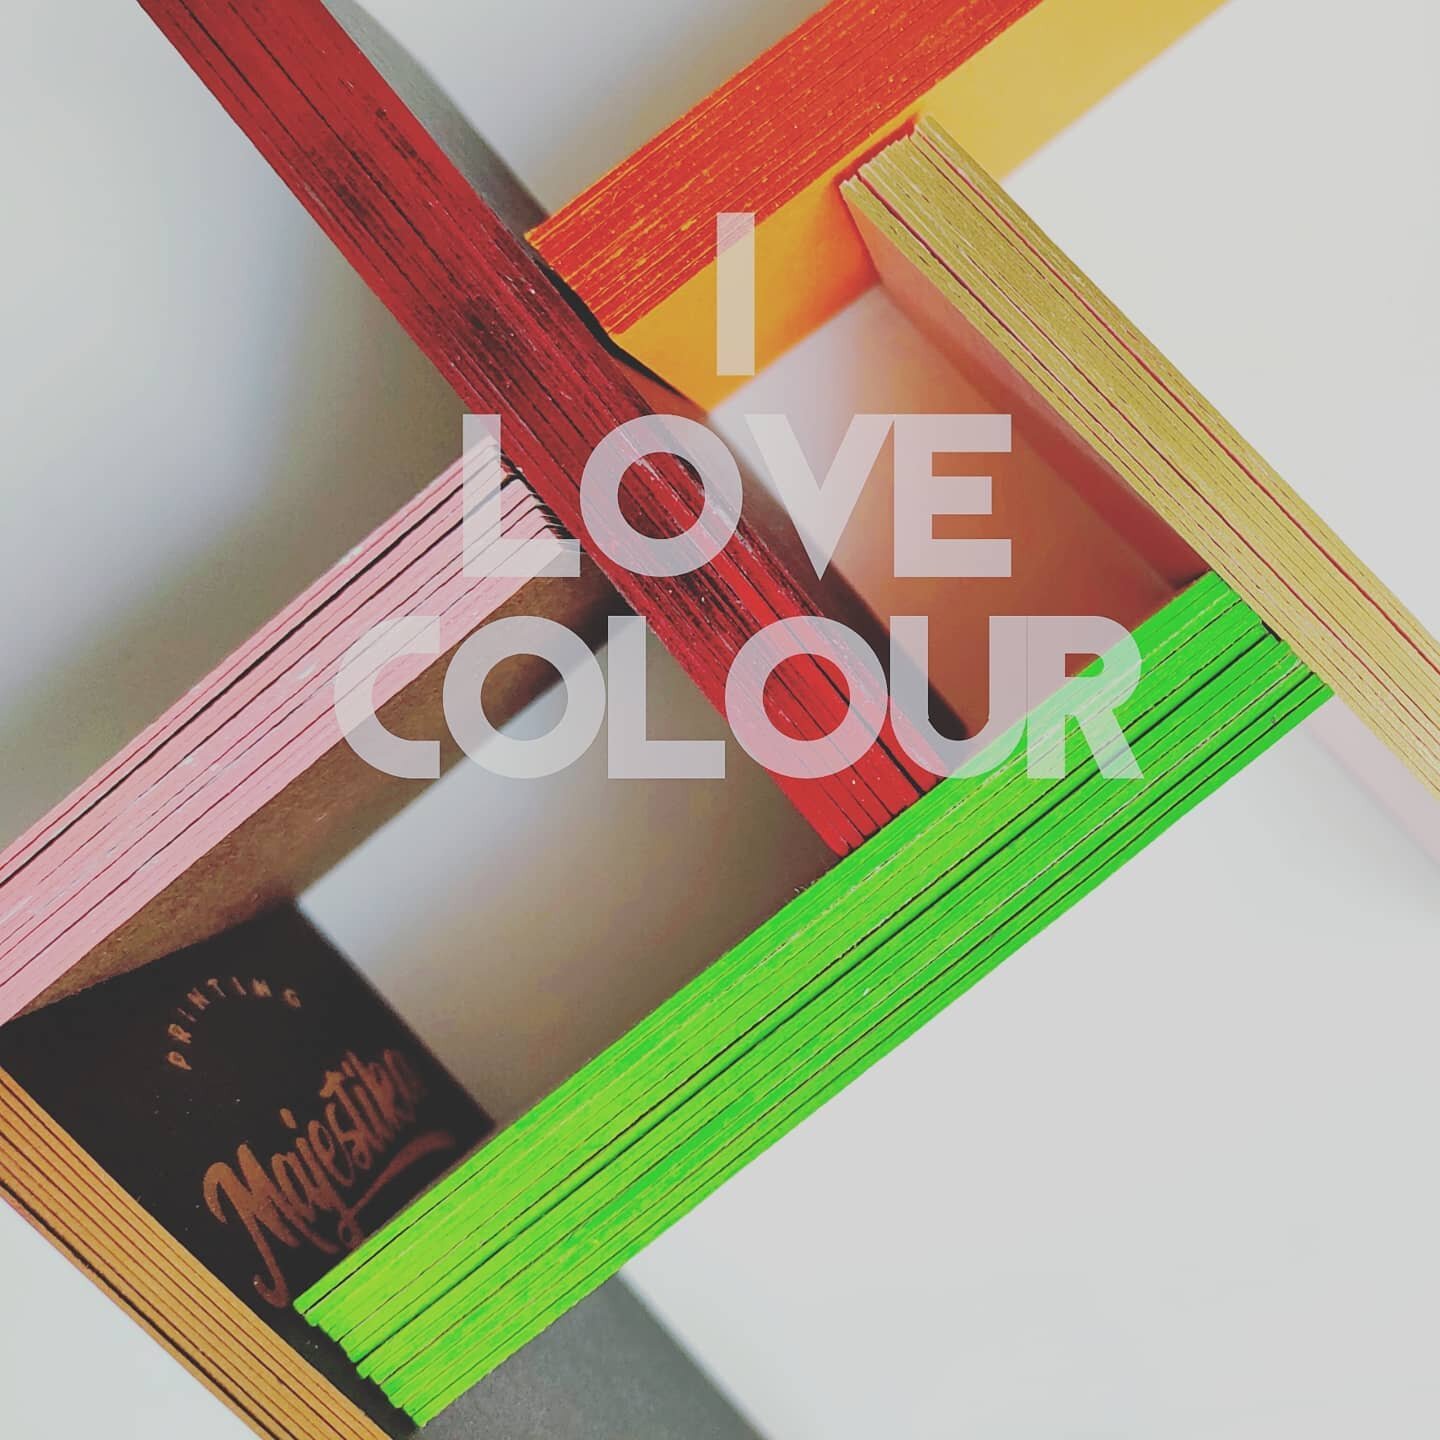 Nos encanta pintar los bordes de colores en l'as tarjetas.  Un producto diferencial. 

#flaixofsetimprenta #flaixofset #imprentaflaixofset #imprenta #printshop #iloveprintmaking #iloveprint